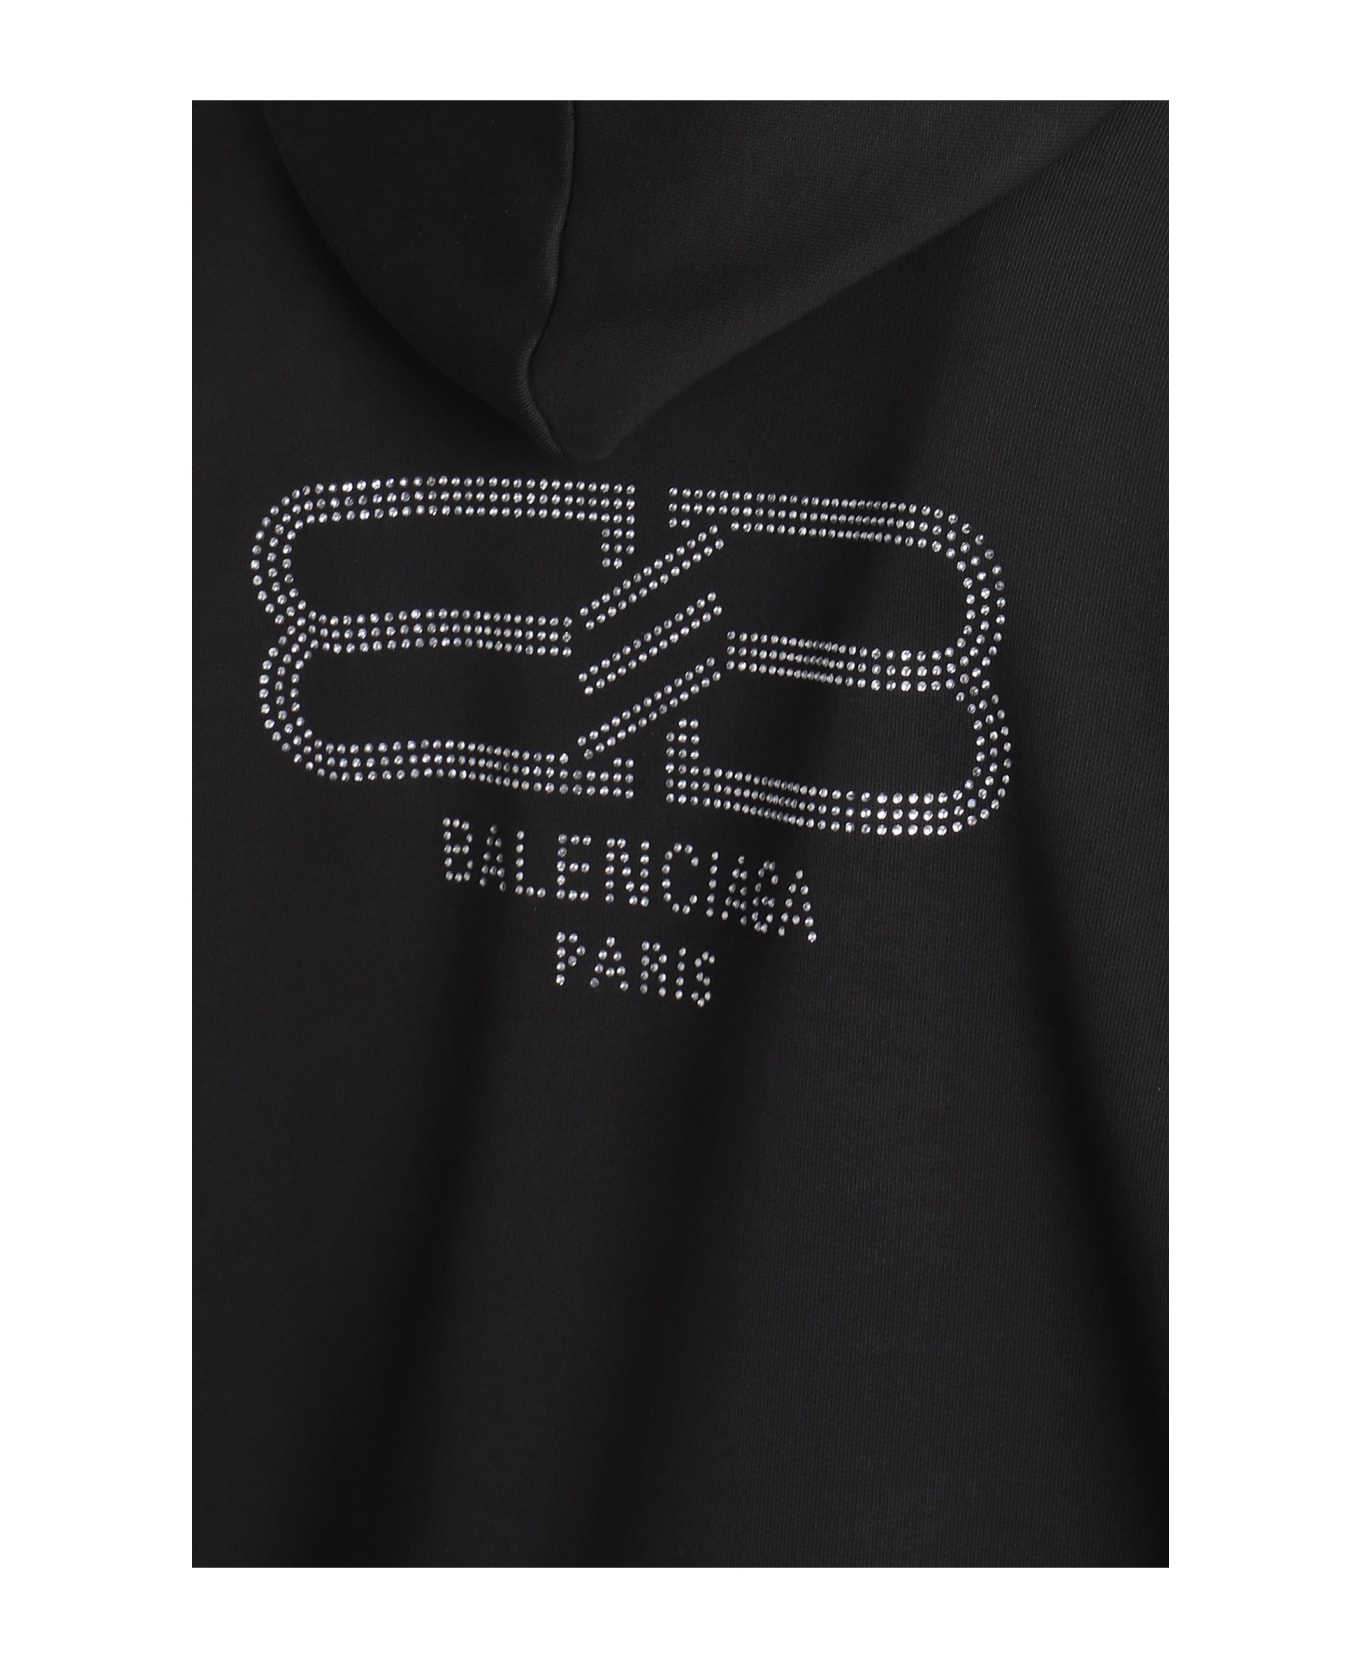 Balenciaga Sweatshirt - Washed Black